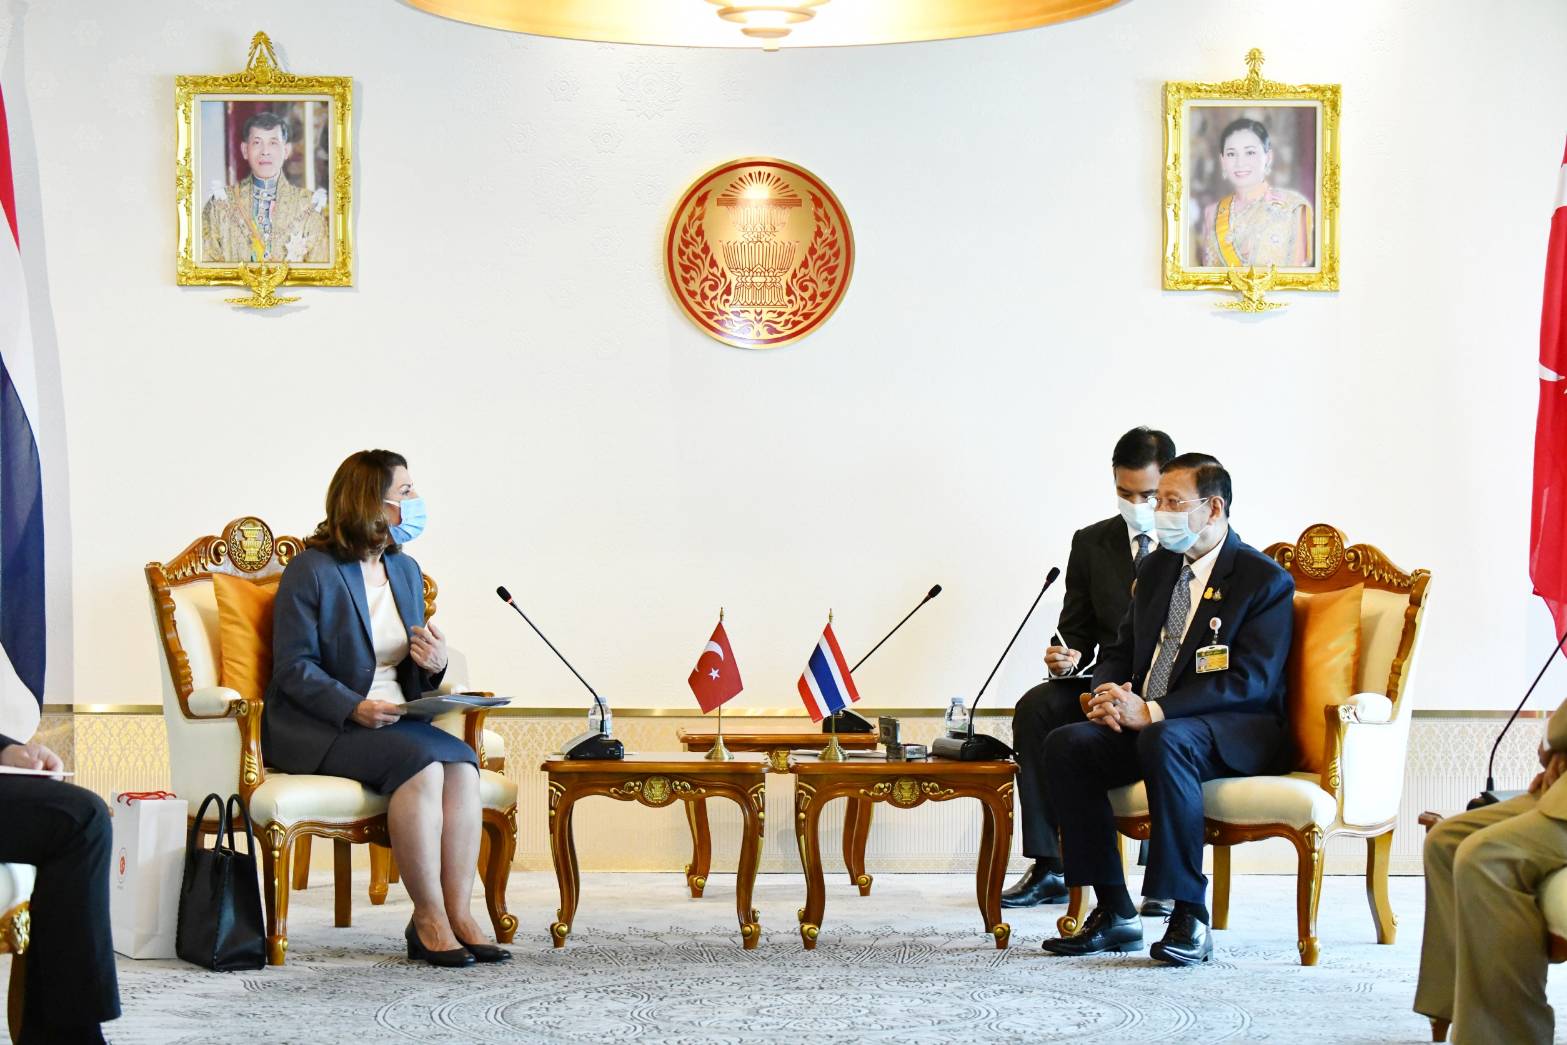 ประธานวุฒิสภาให้การรับรองเอกอัครราชทูตสาธารณรัฐตุรกีประจำประเทศไทย ในโอกาสเข้ารับหน้าที่  เมื่อวันศุกร์ที่ ๑๑ มีนาคม ๒๕๖๕